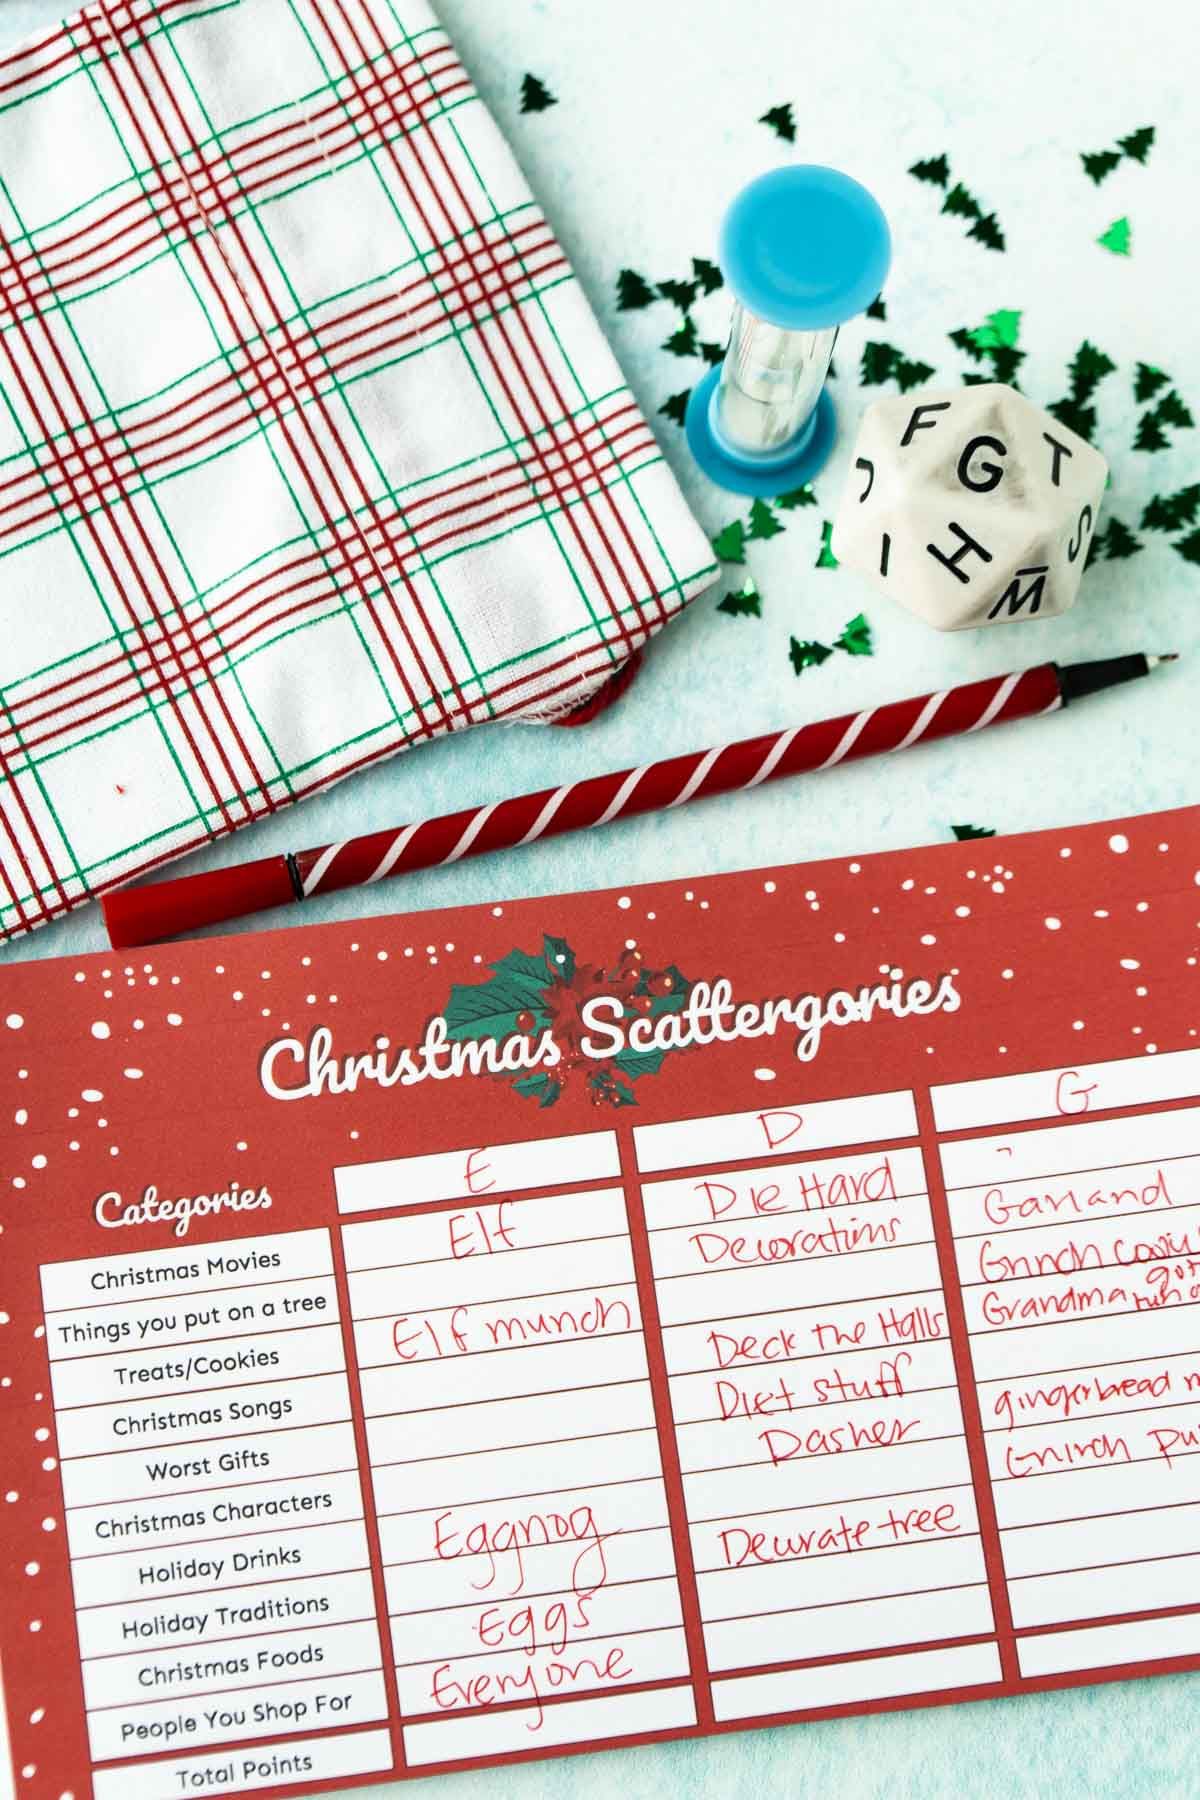 Χριστουγεννιάτικη κάρτα Scattergories με απαντήσεις γραμμένες